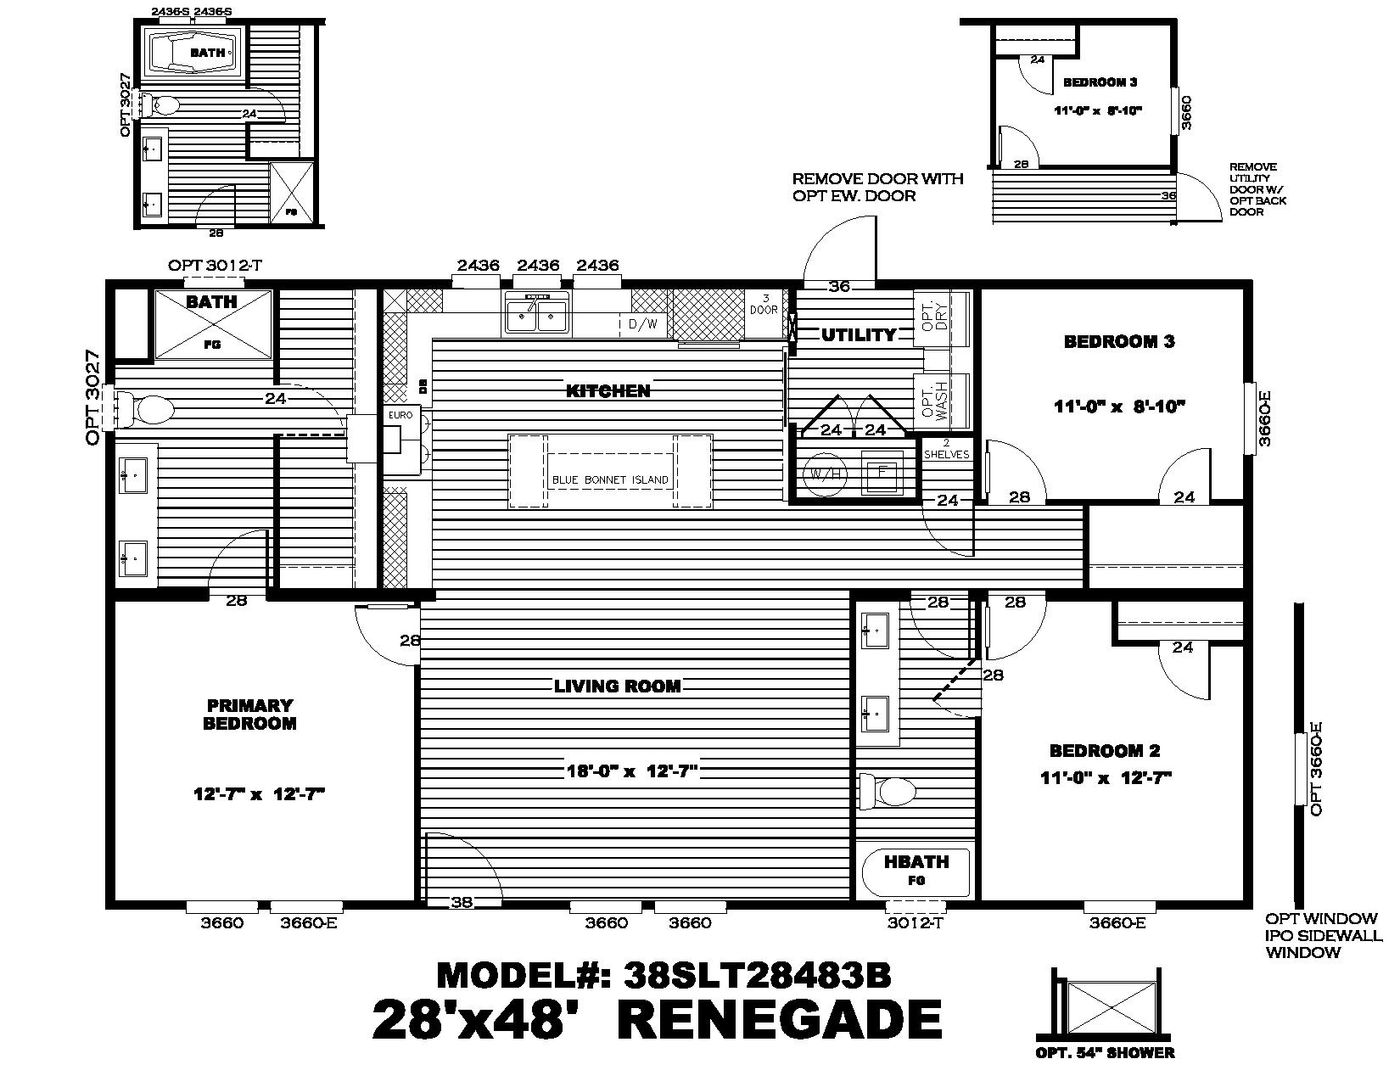 The Renegade Floor Plan